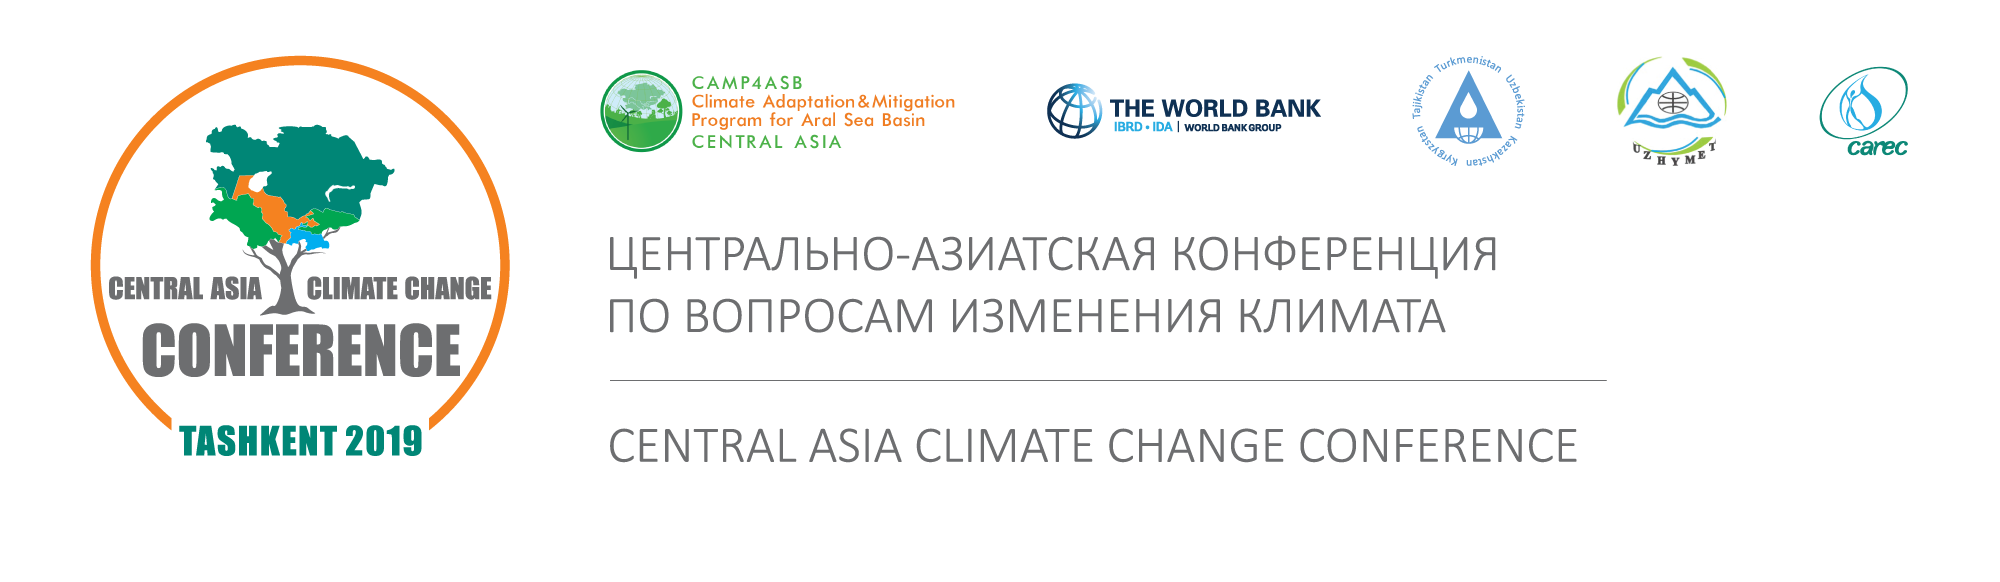 В Ташкенте состоится Центрально-Азиатская конференция по вопросам изменения климата 